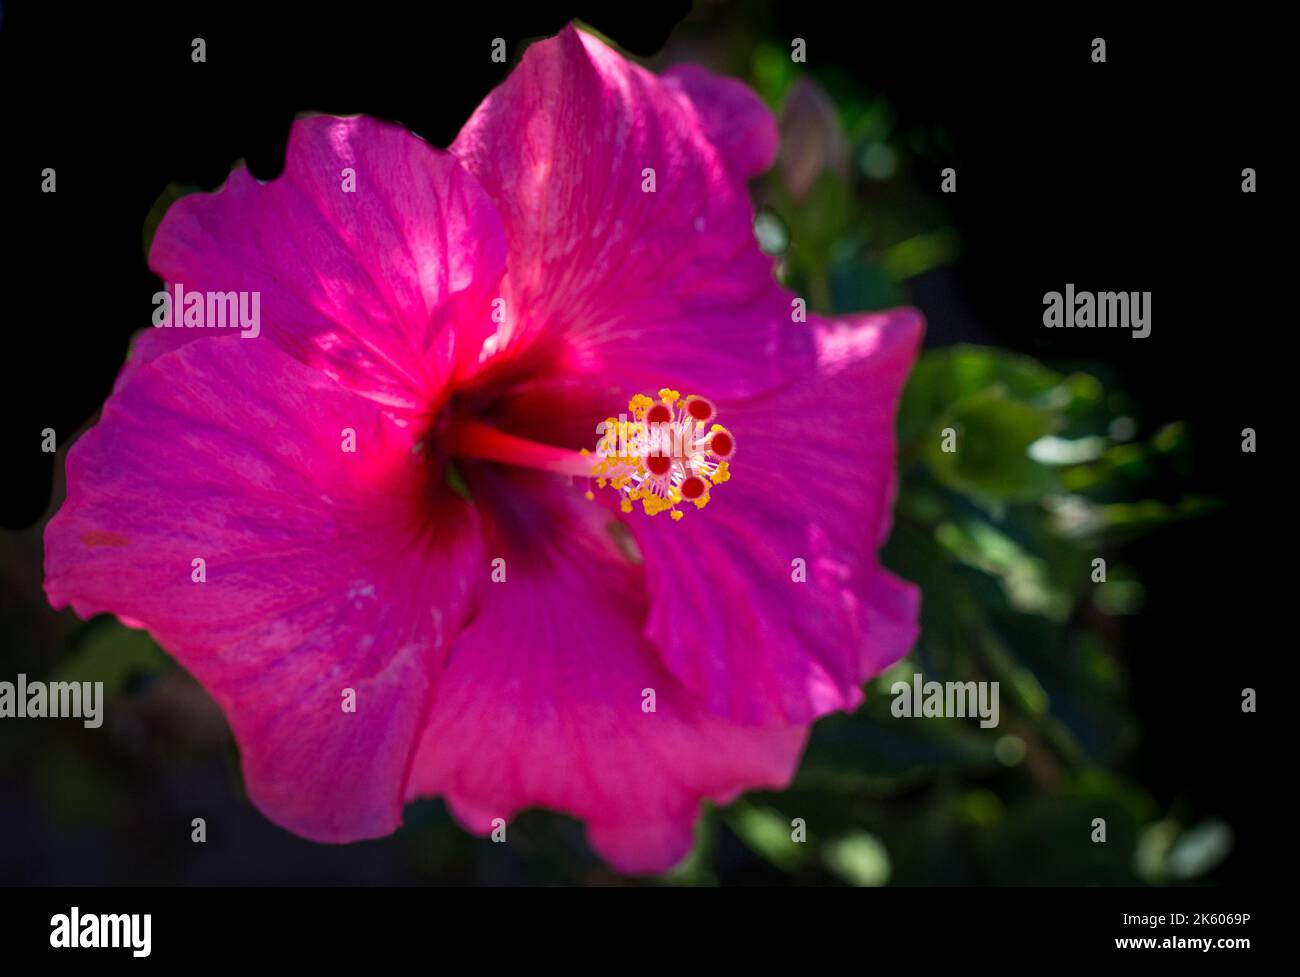 Flor de hibisco, pétalos rosados, primer plano sobre fondo negro, en el concepto de horticultura y jardinería ligera y aplicada Foto de stock